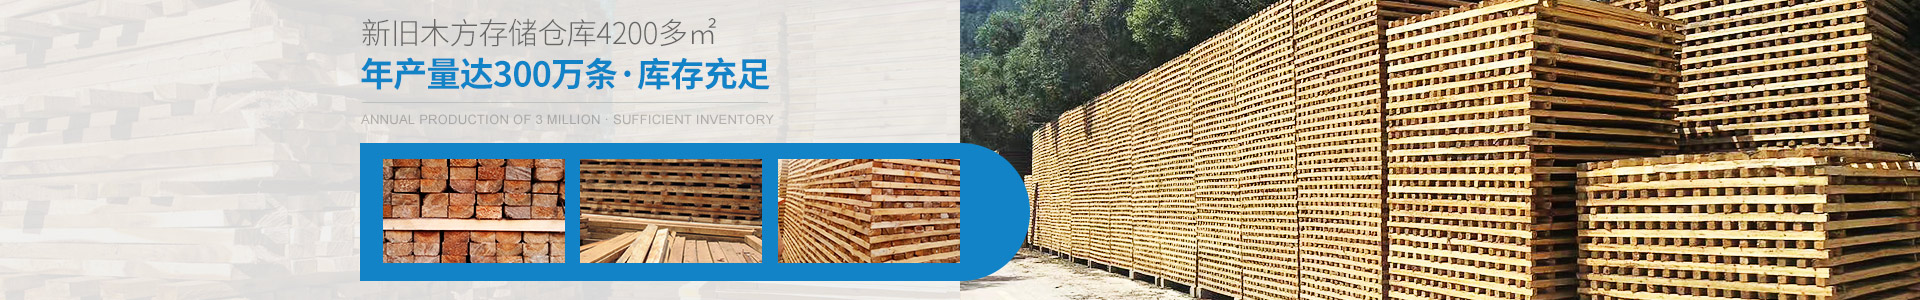 金生水新旧木方存储仓库4200多㎡——年产量达300万条，库存充足